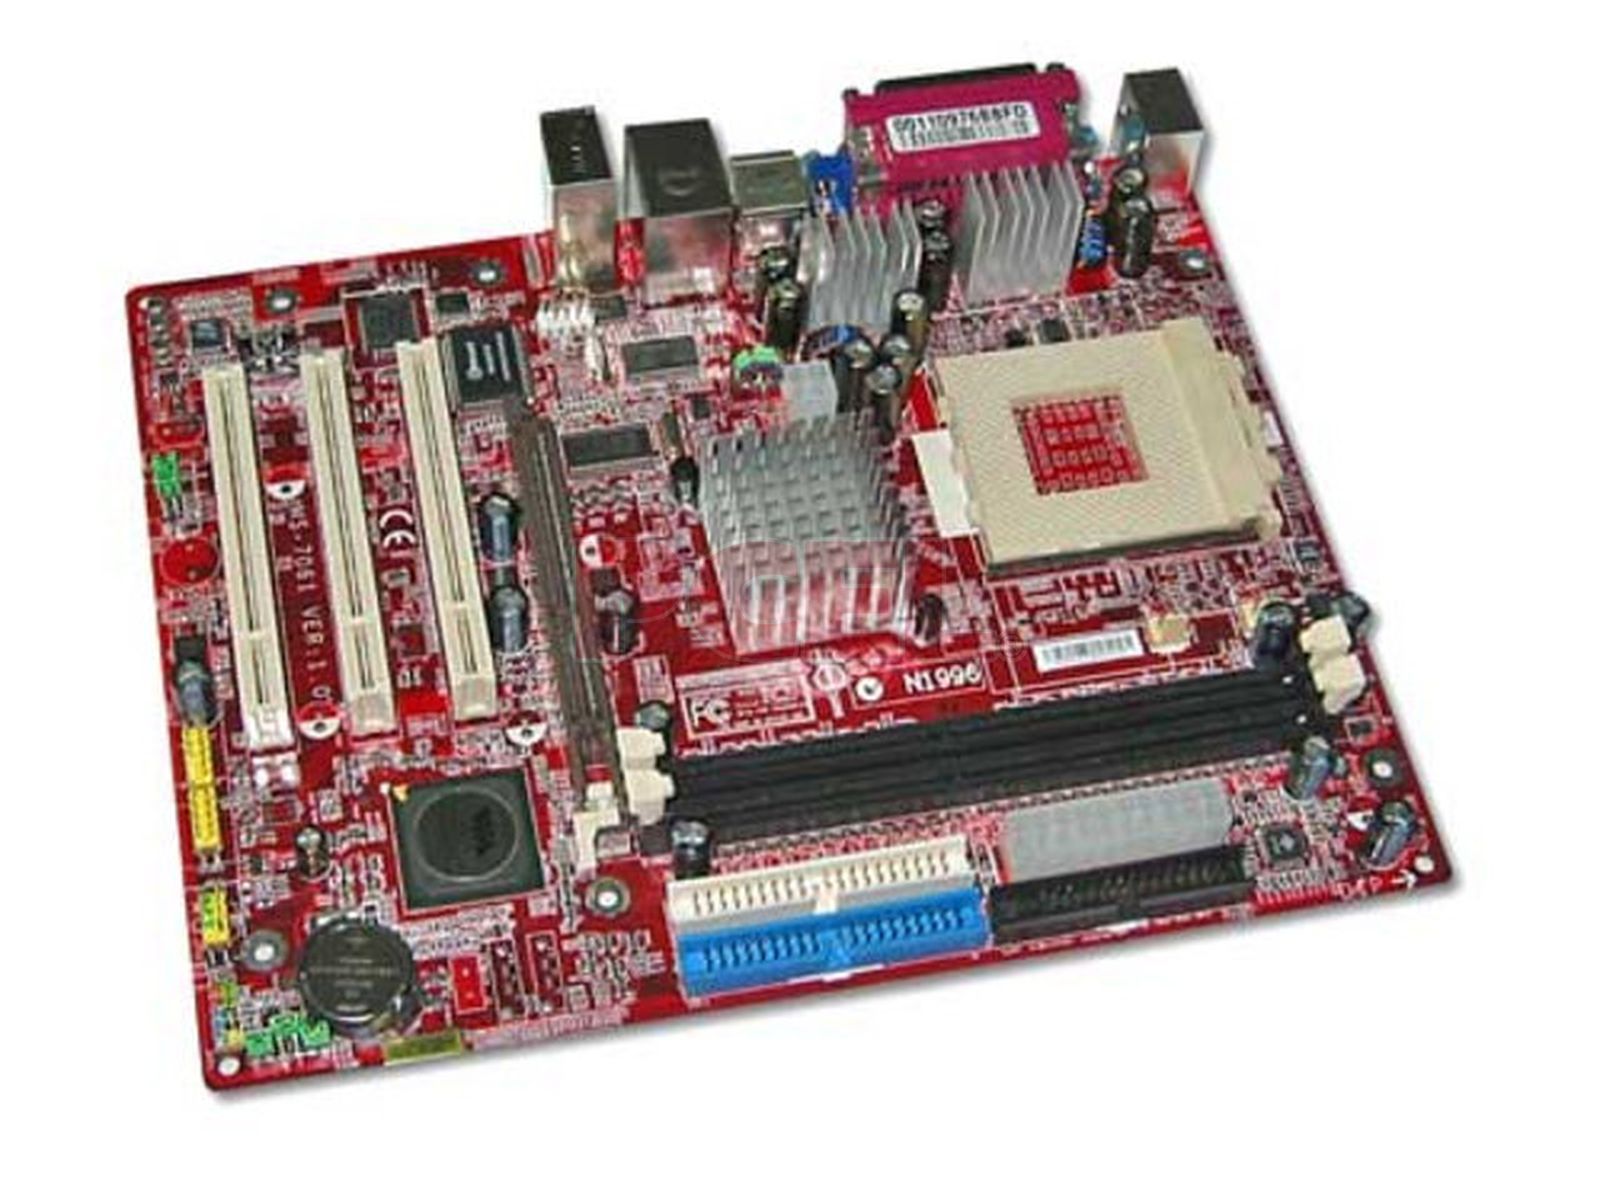 burlarse de Interesante Gracias T. Madre MSI KM3M-V, ChipSet VIA KM266 Pro, Soporta: AMD Athlon  XP/Duron/Sempron, Socket A, Integrado: Video S3 Graphics, Sonido VIA 5.1 y  Red 10/100, Memoria: SDRAM DDR266, DDR333, Diseño: MicroATX, Puertos: 3x